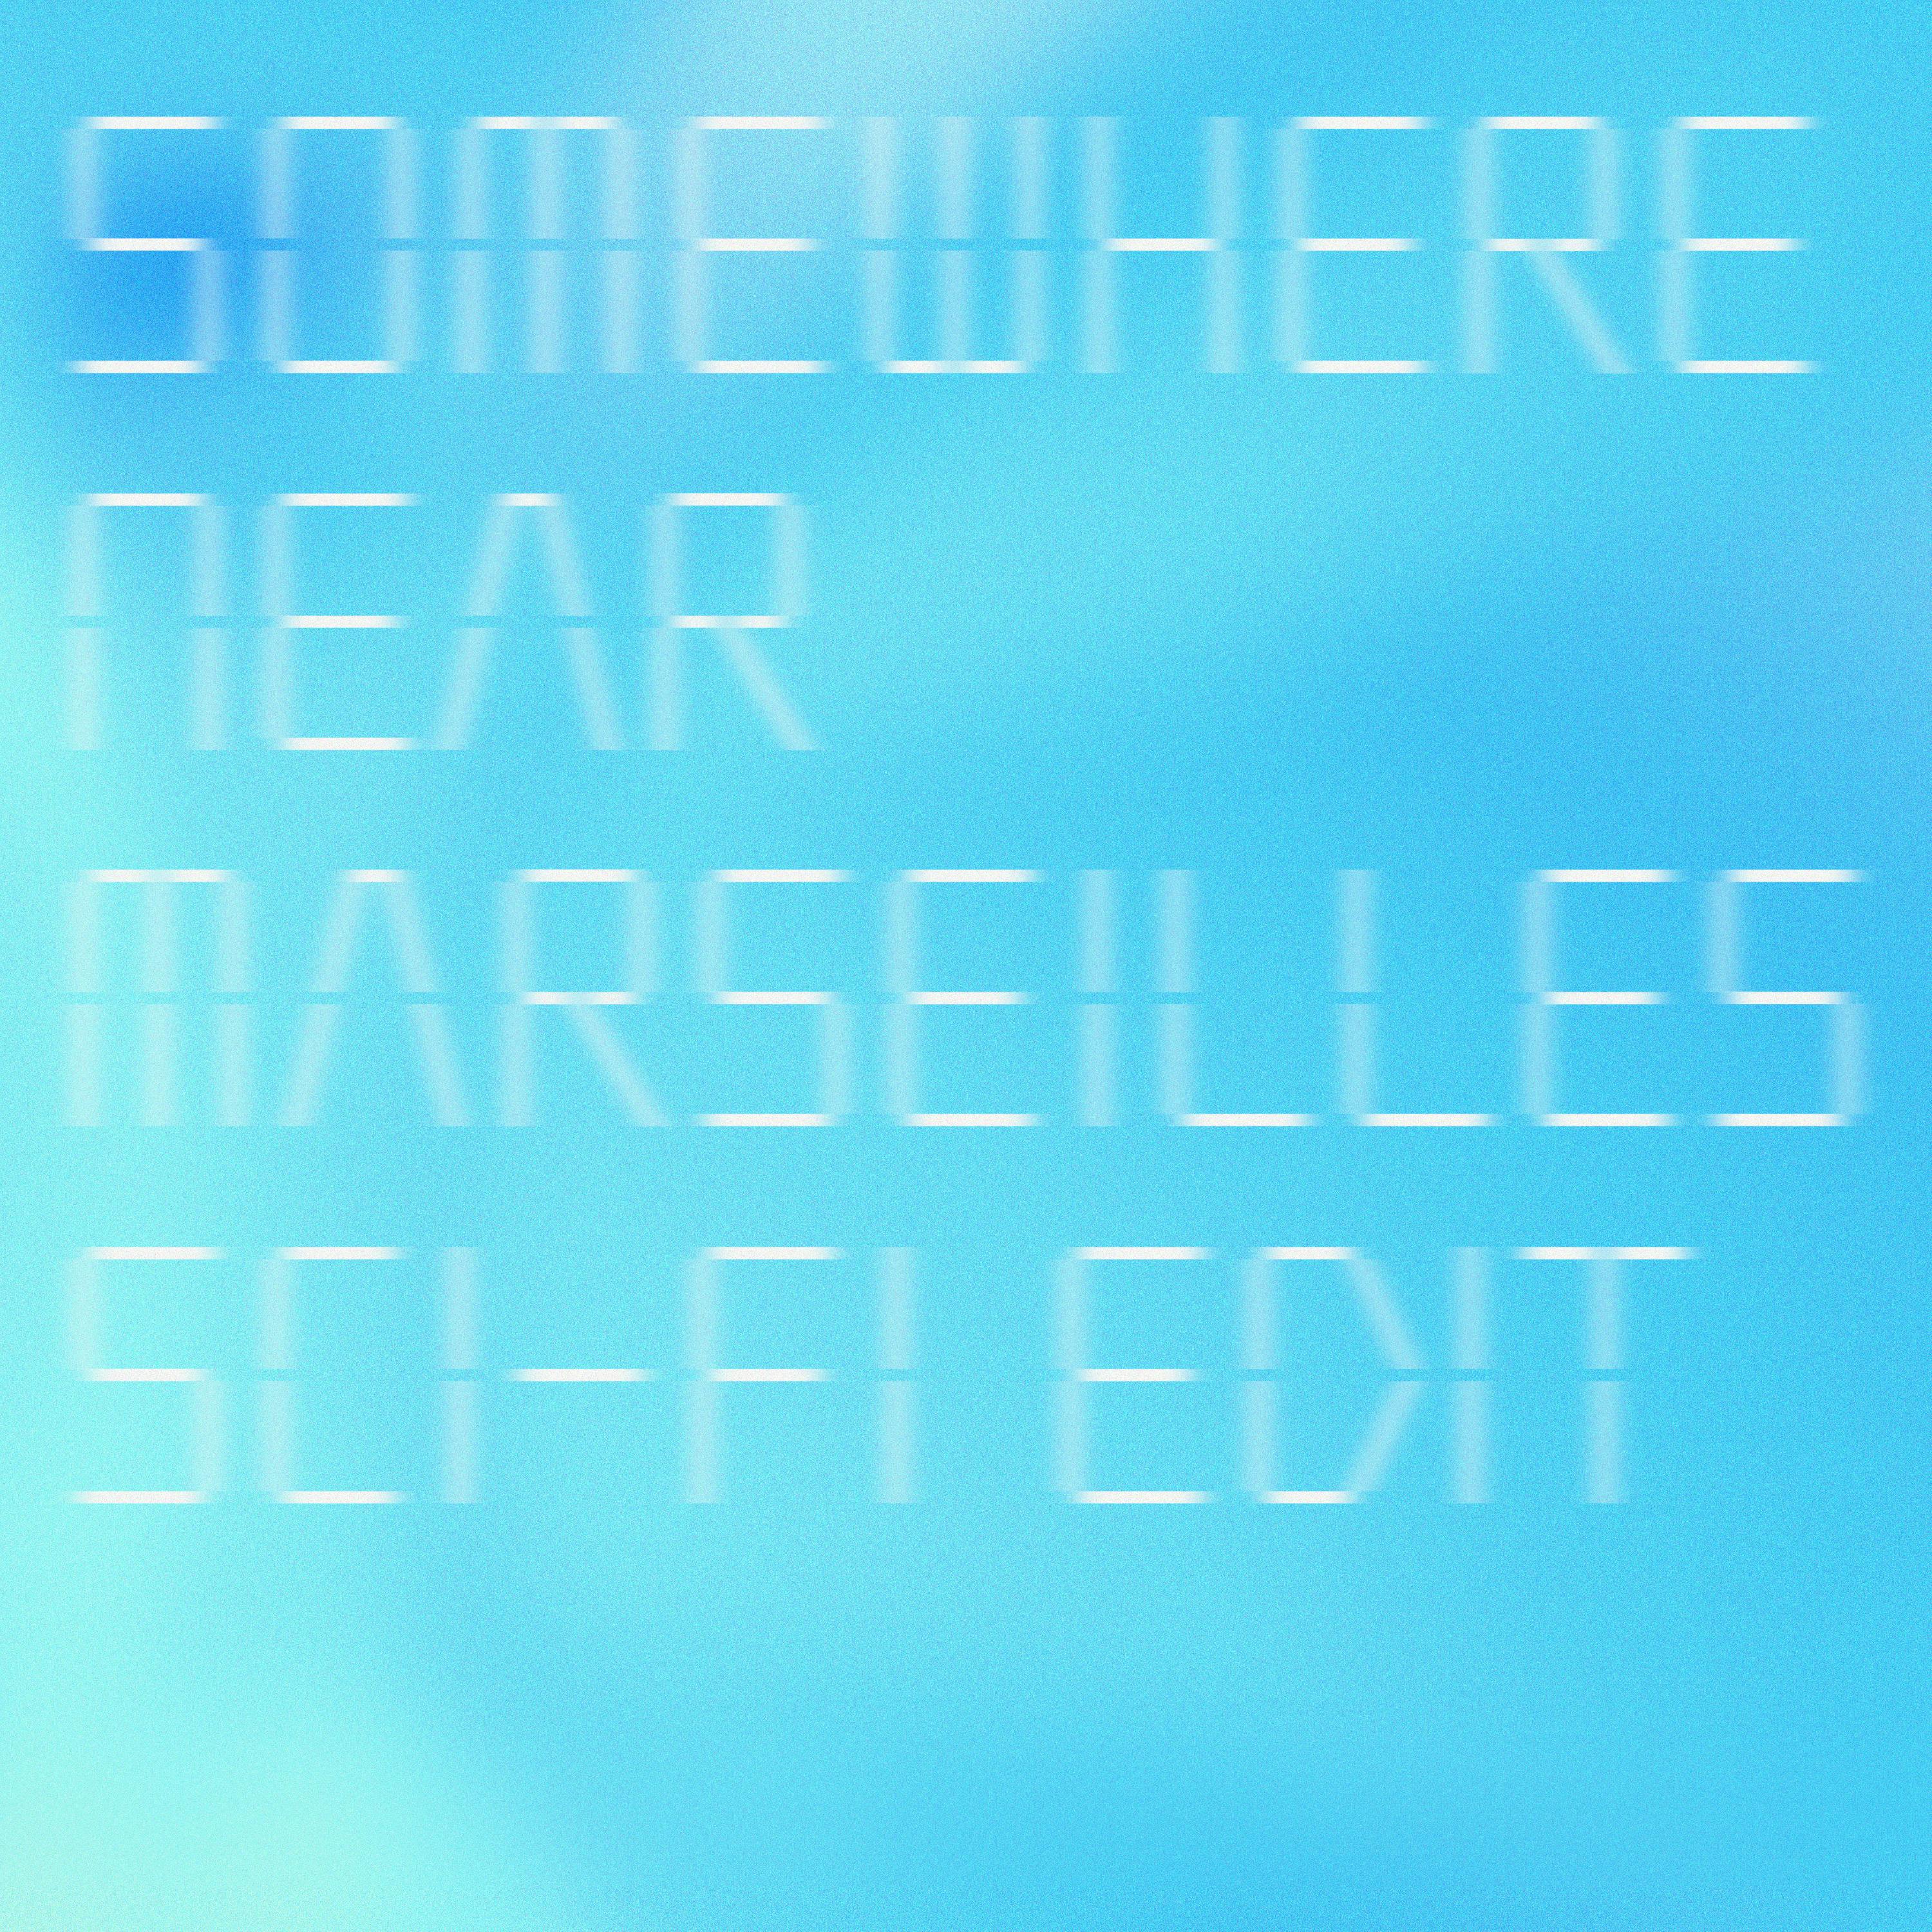 Somewhere Near Marseilles -マルセイユ辺り- (Sci-Fi Edit)のサムネイル